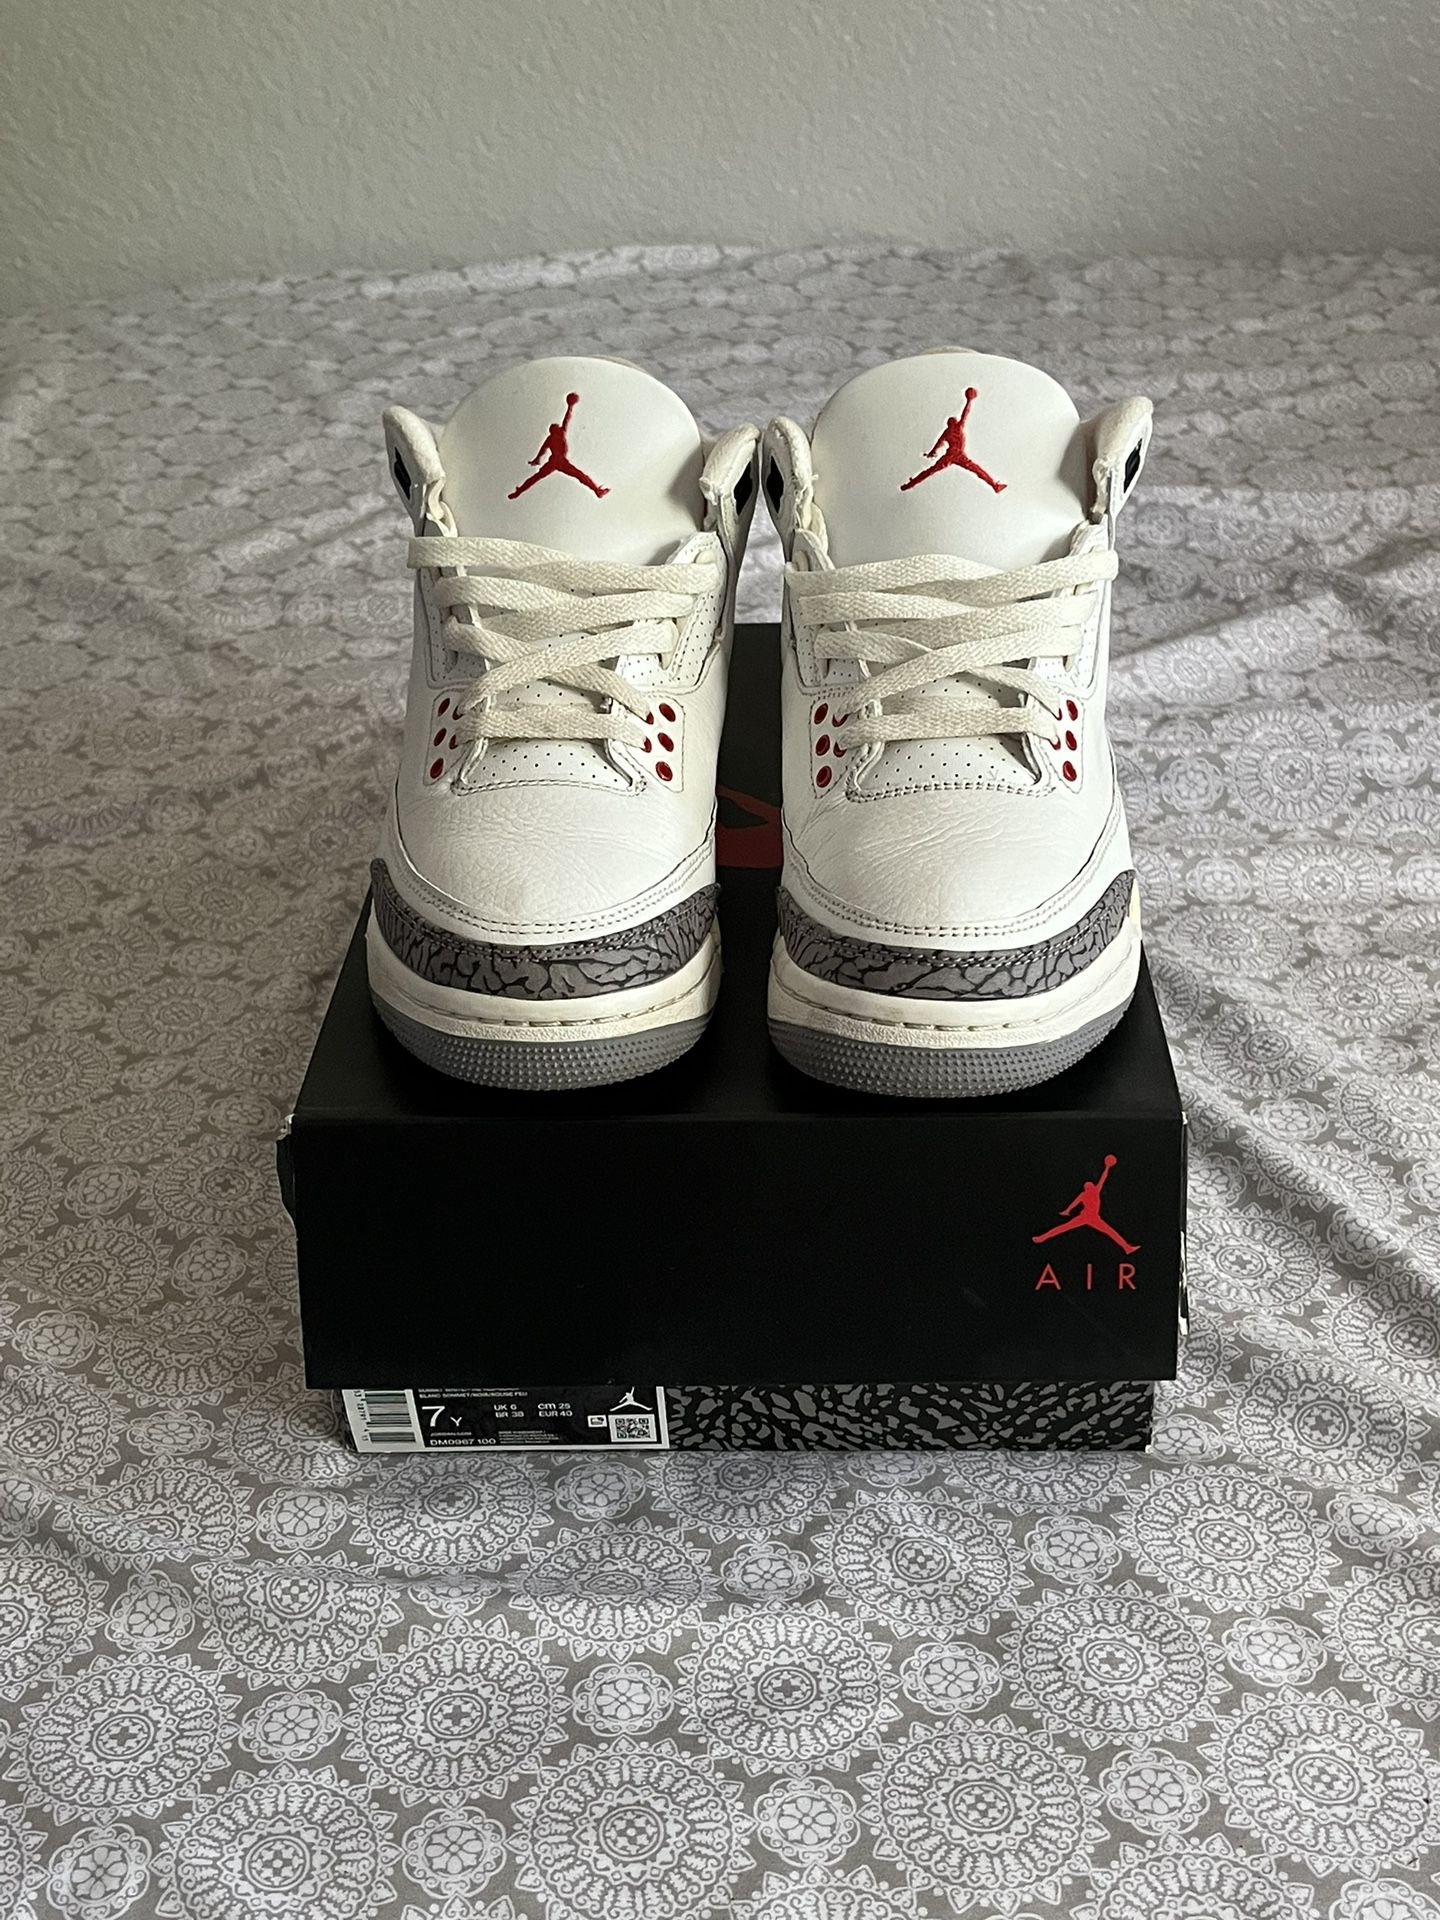 Air Jordan Retro 3 